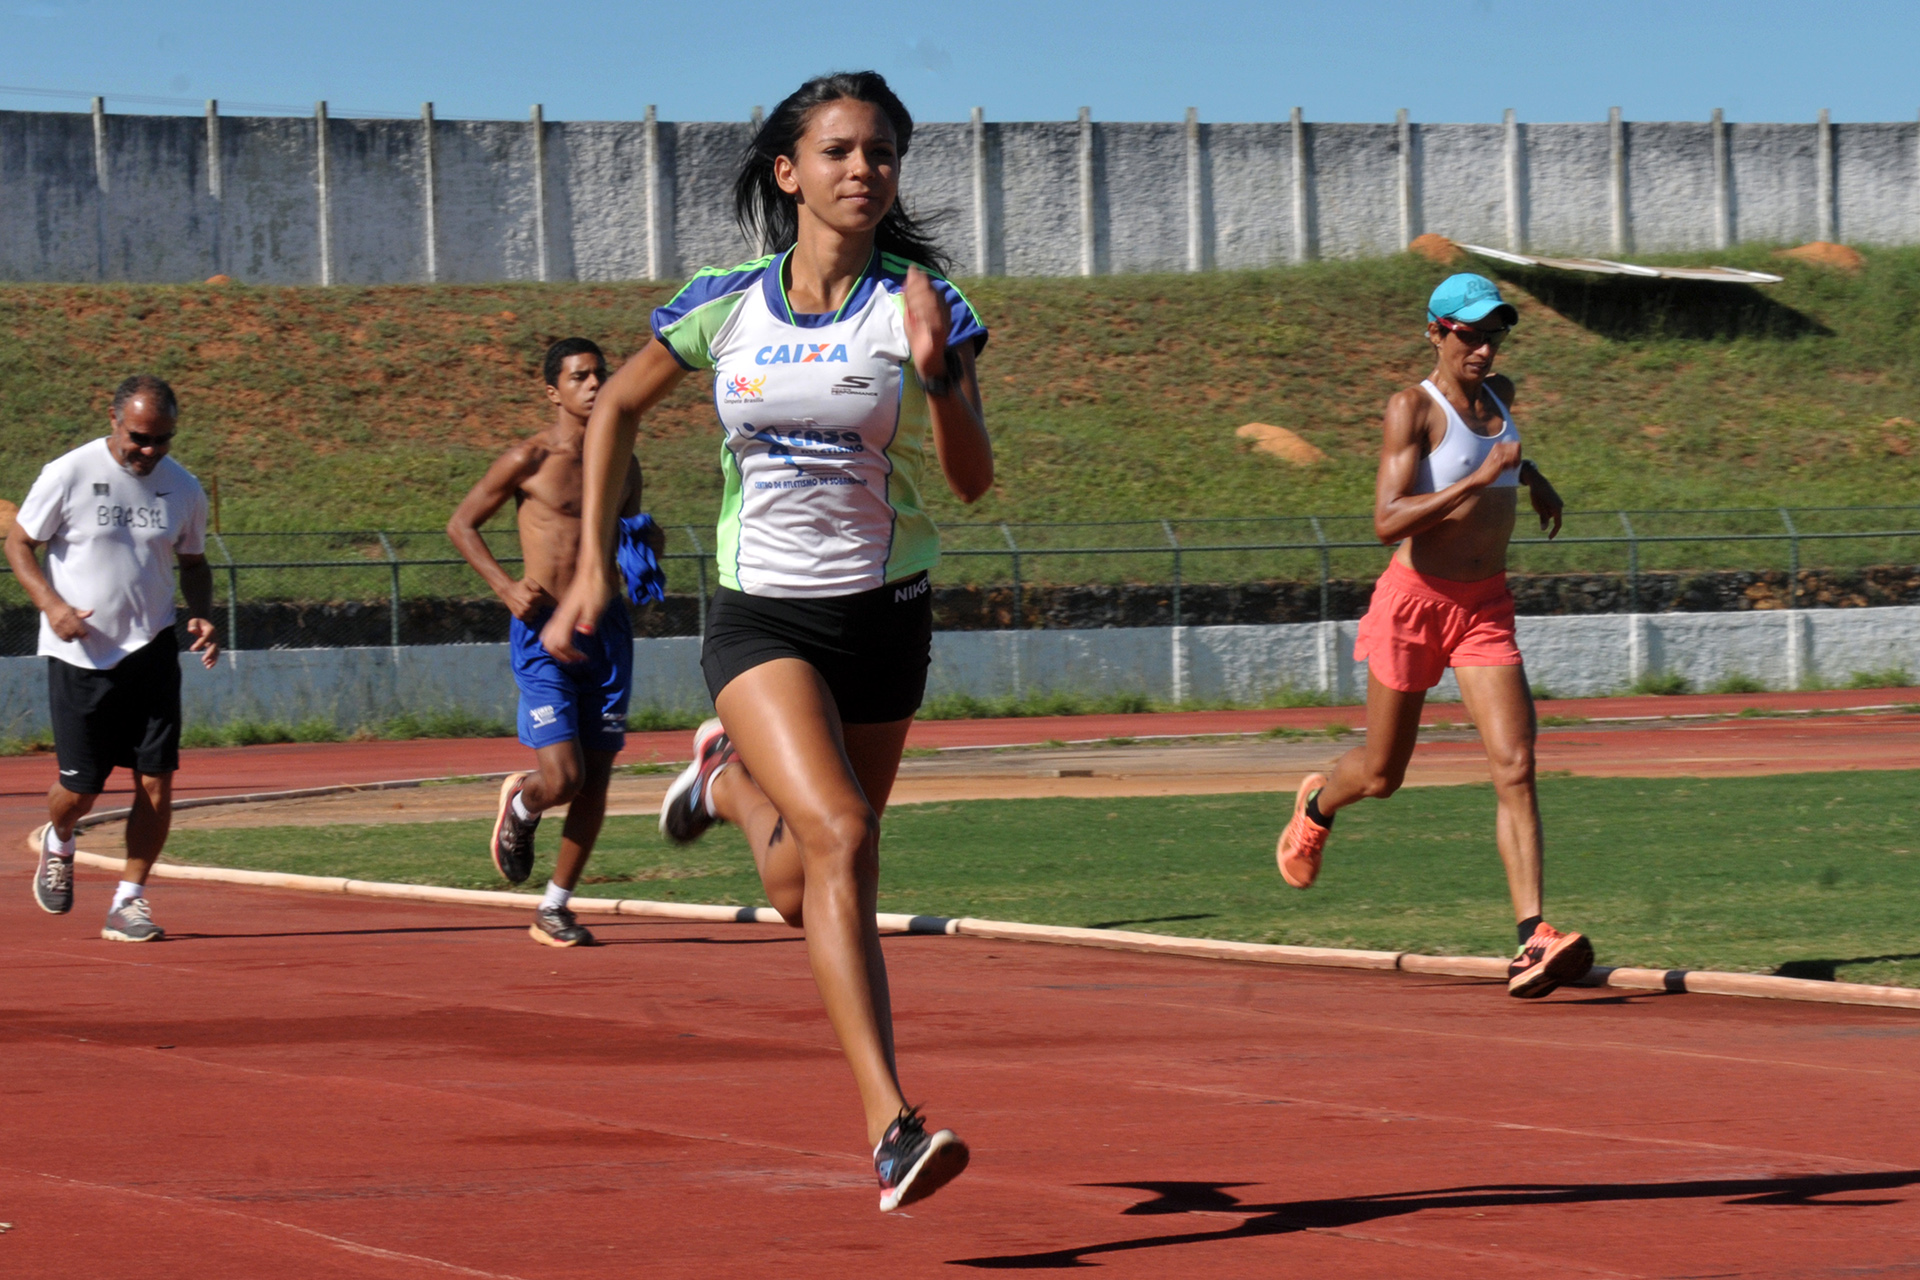 Campeã de atletismo nos Jogos da Juventude de 2016, Larissa do Livramento, de 18 anos, conquistou a primeira medalha e se encantou pelo atletismo.